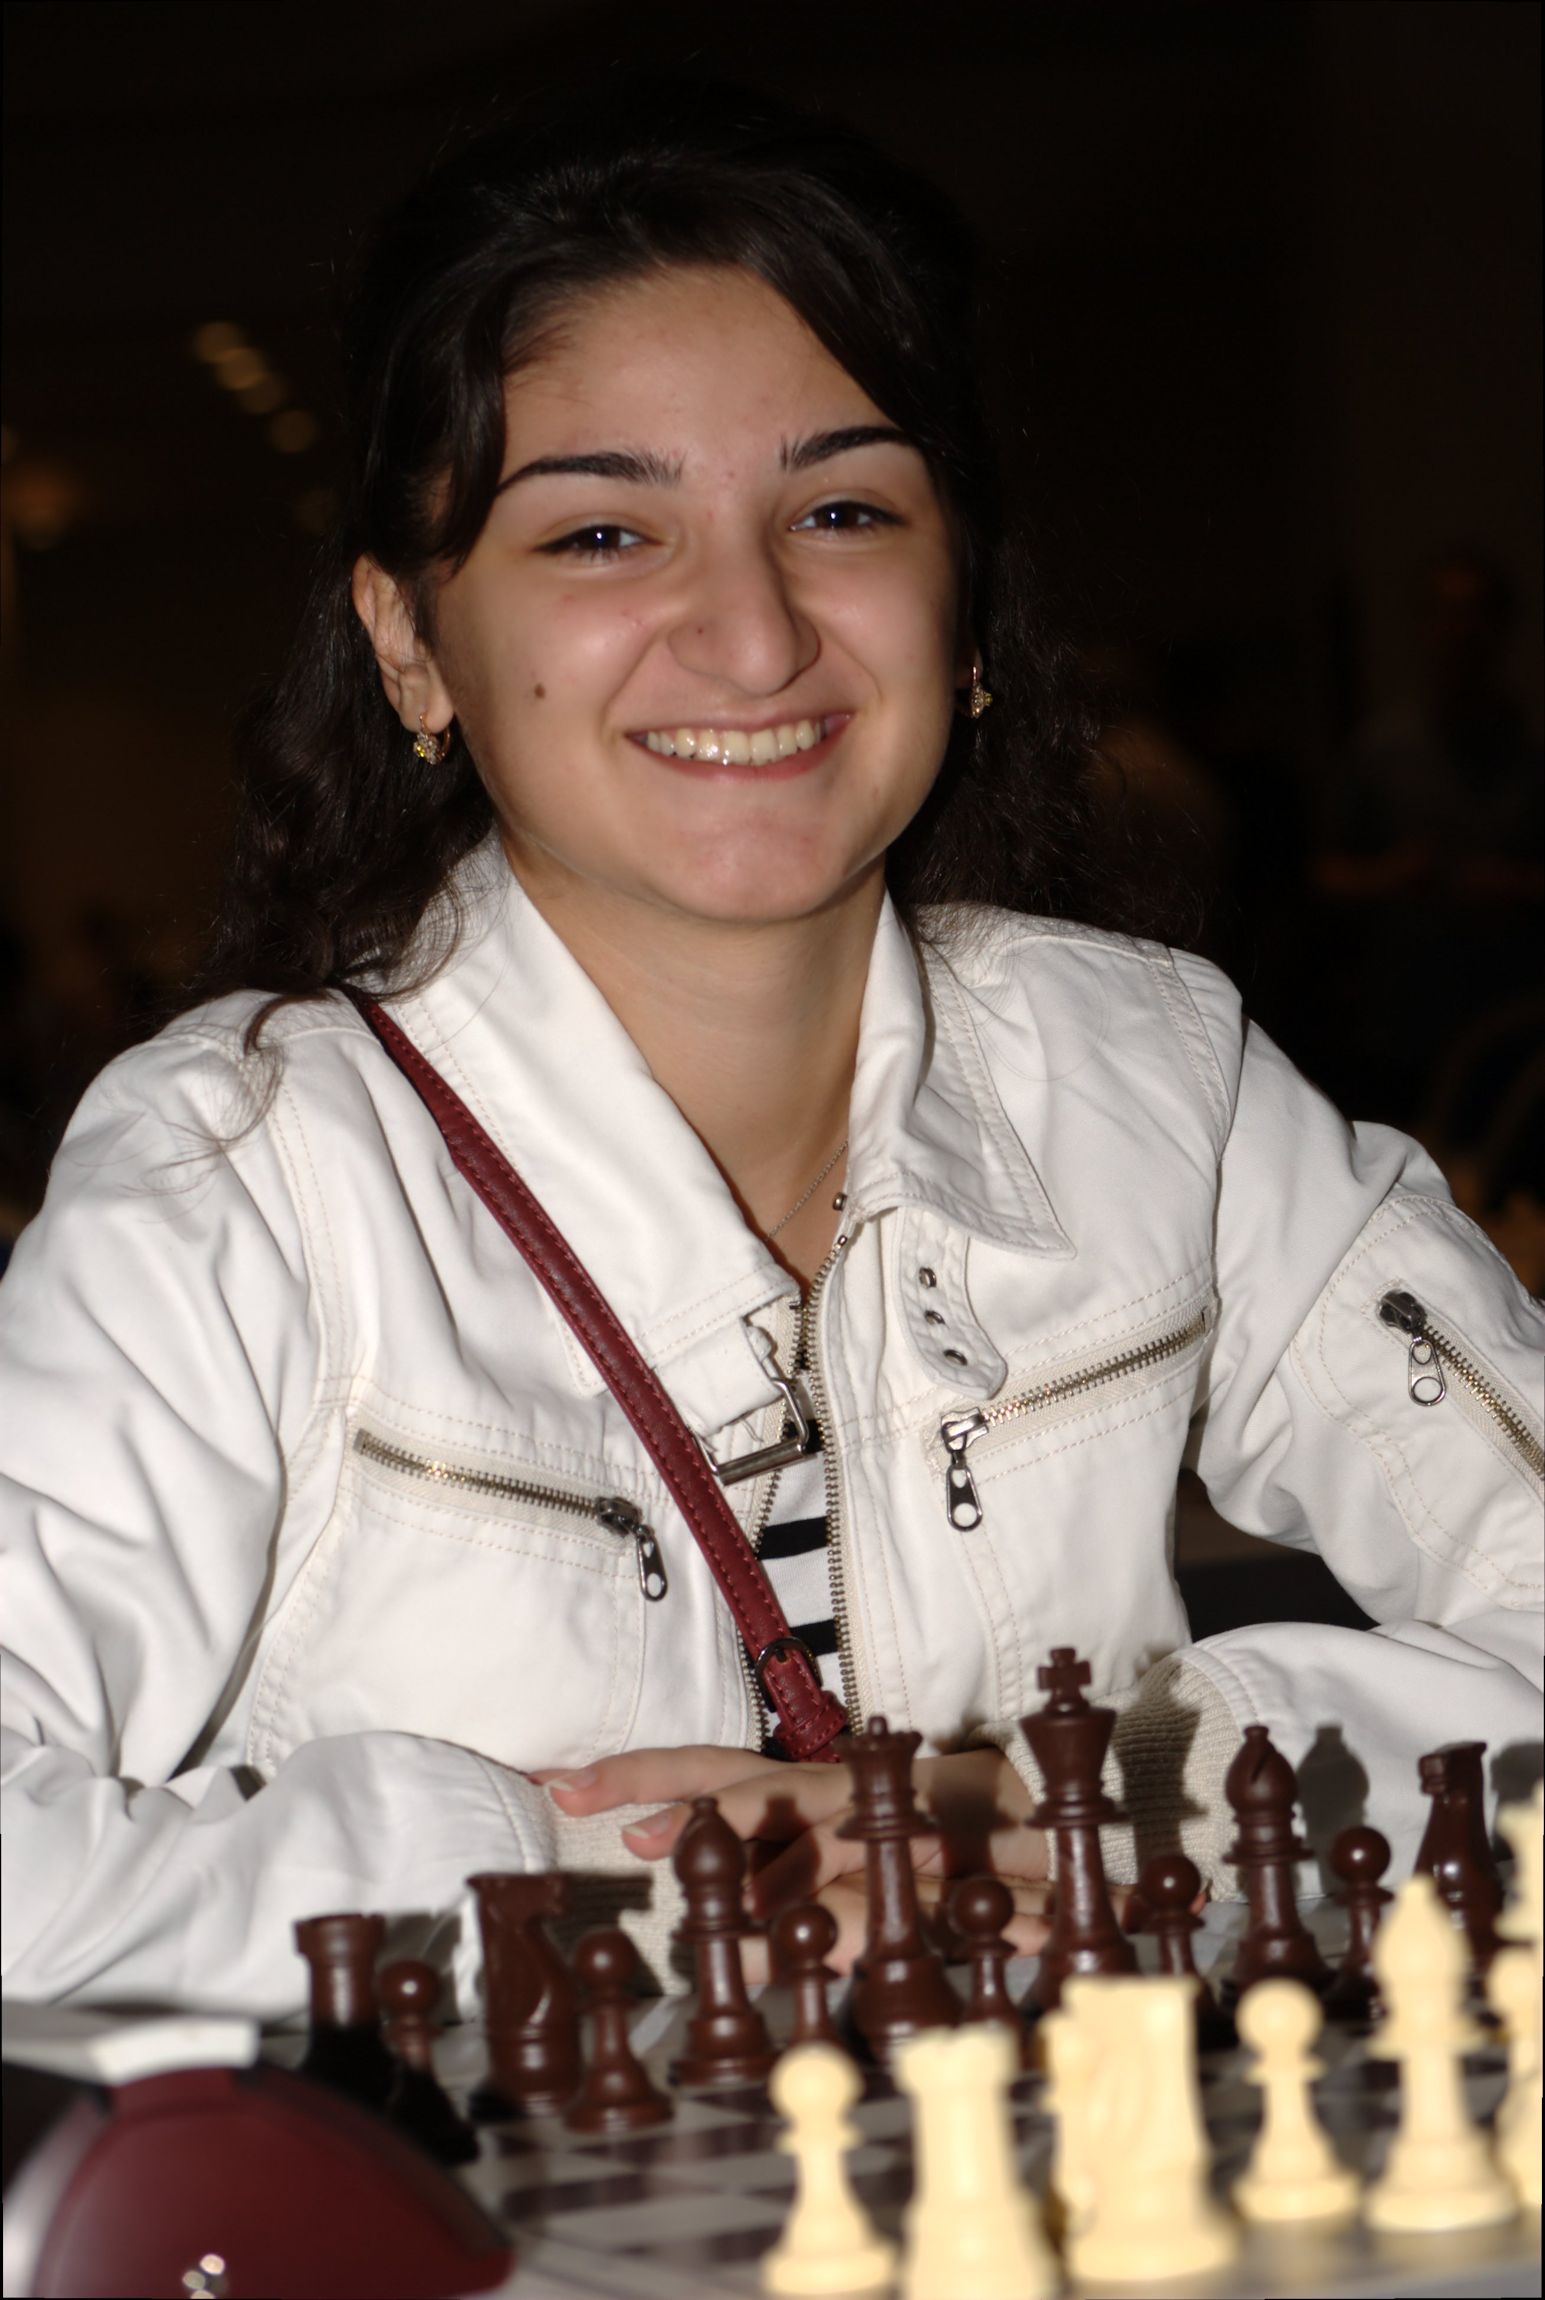 麗しき女性チェス棋士の肖像 その二